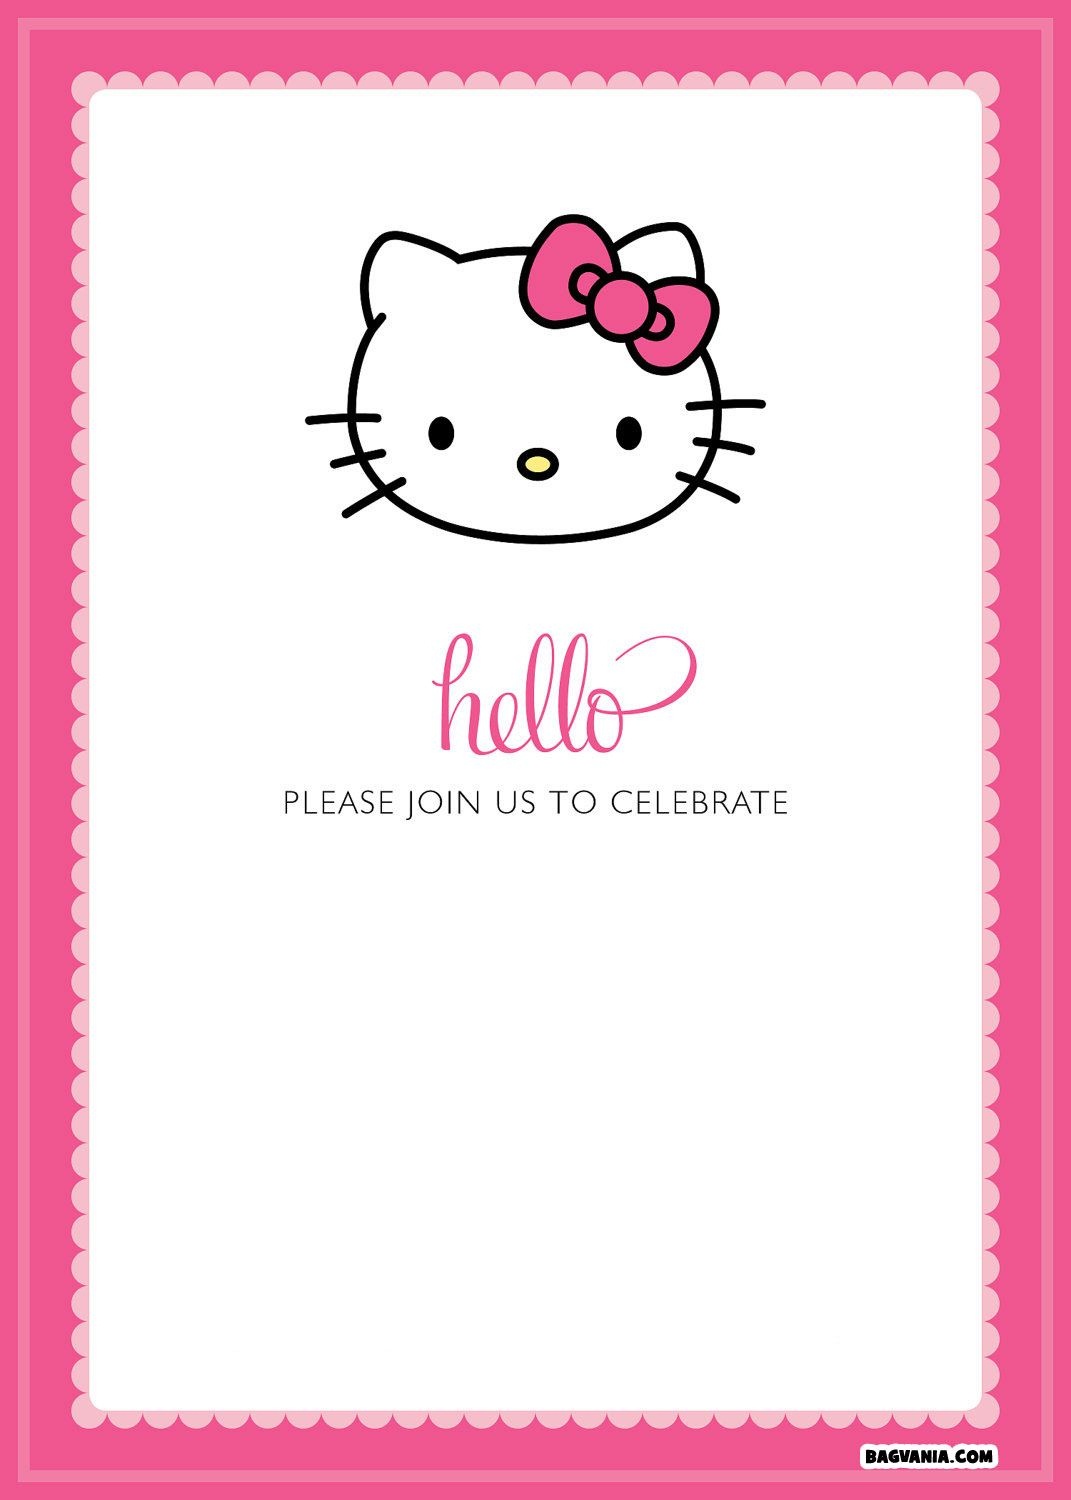 Free Printable Hello Kitty Birthday Invitations – Bagvania Free - Hello Kitty Birthday Card Printable Free